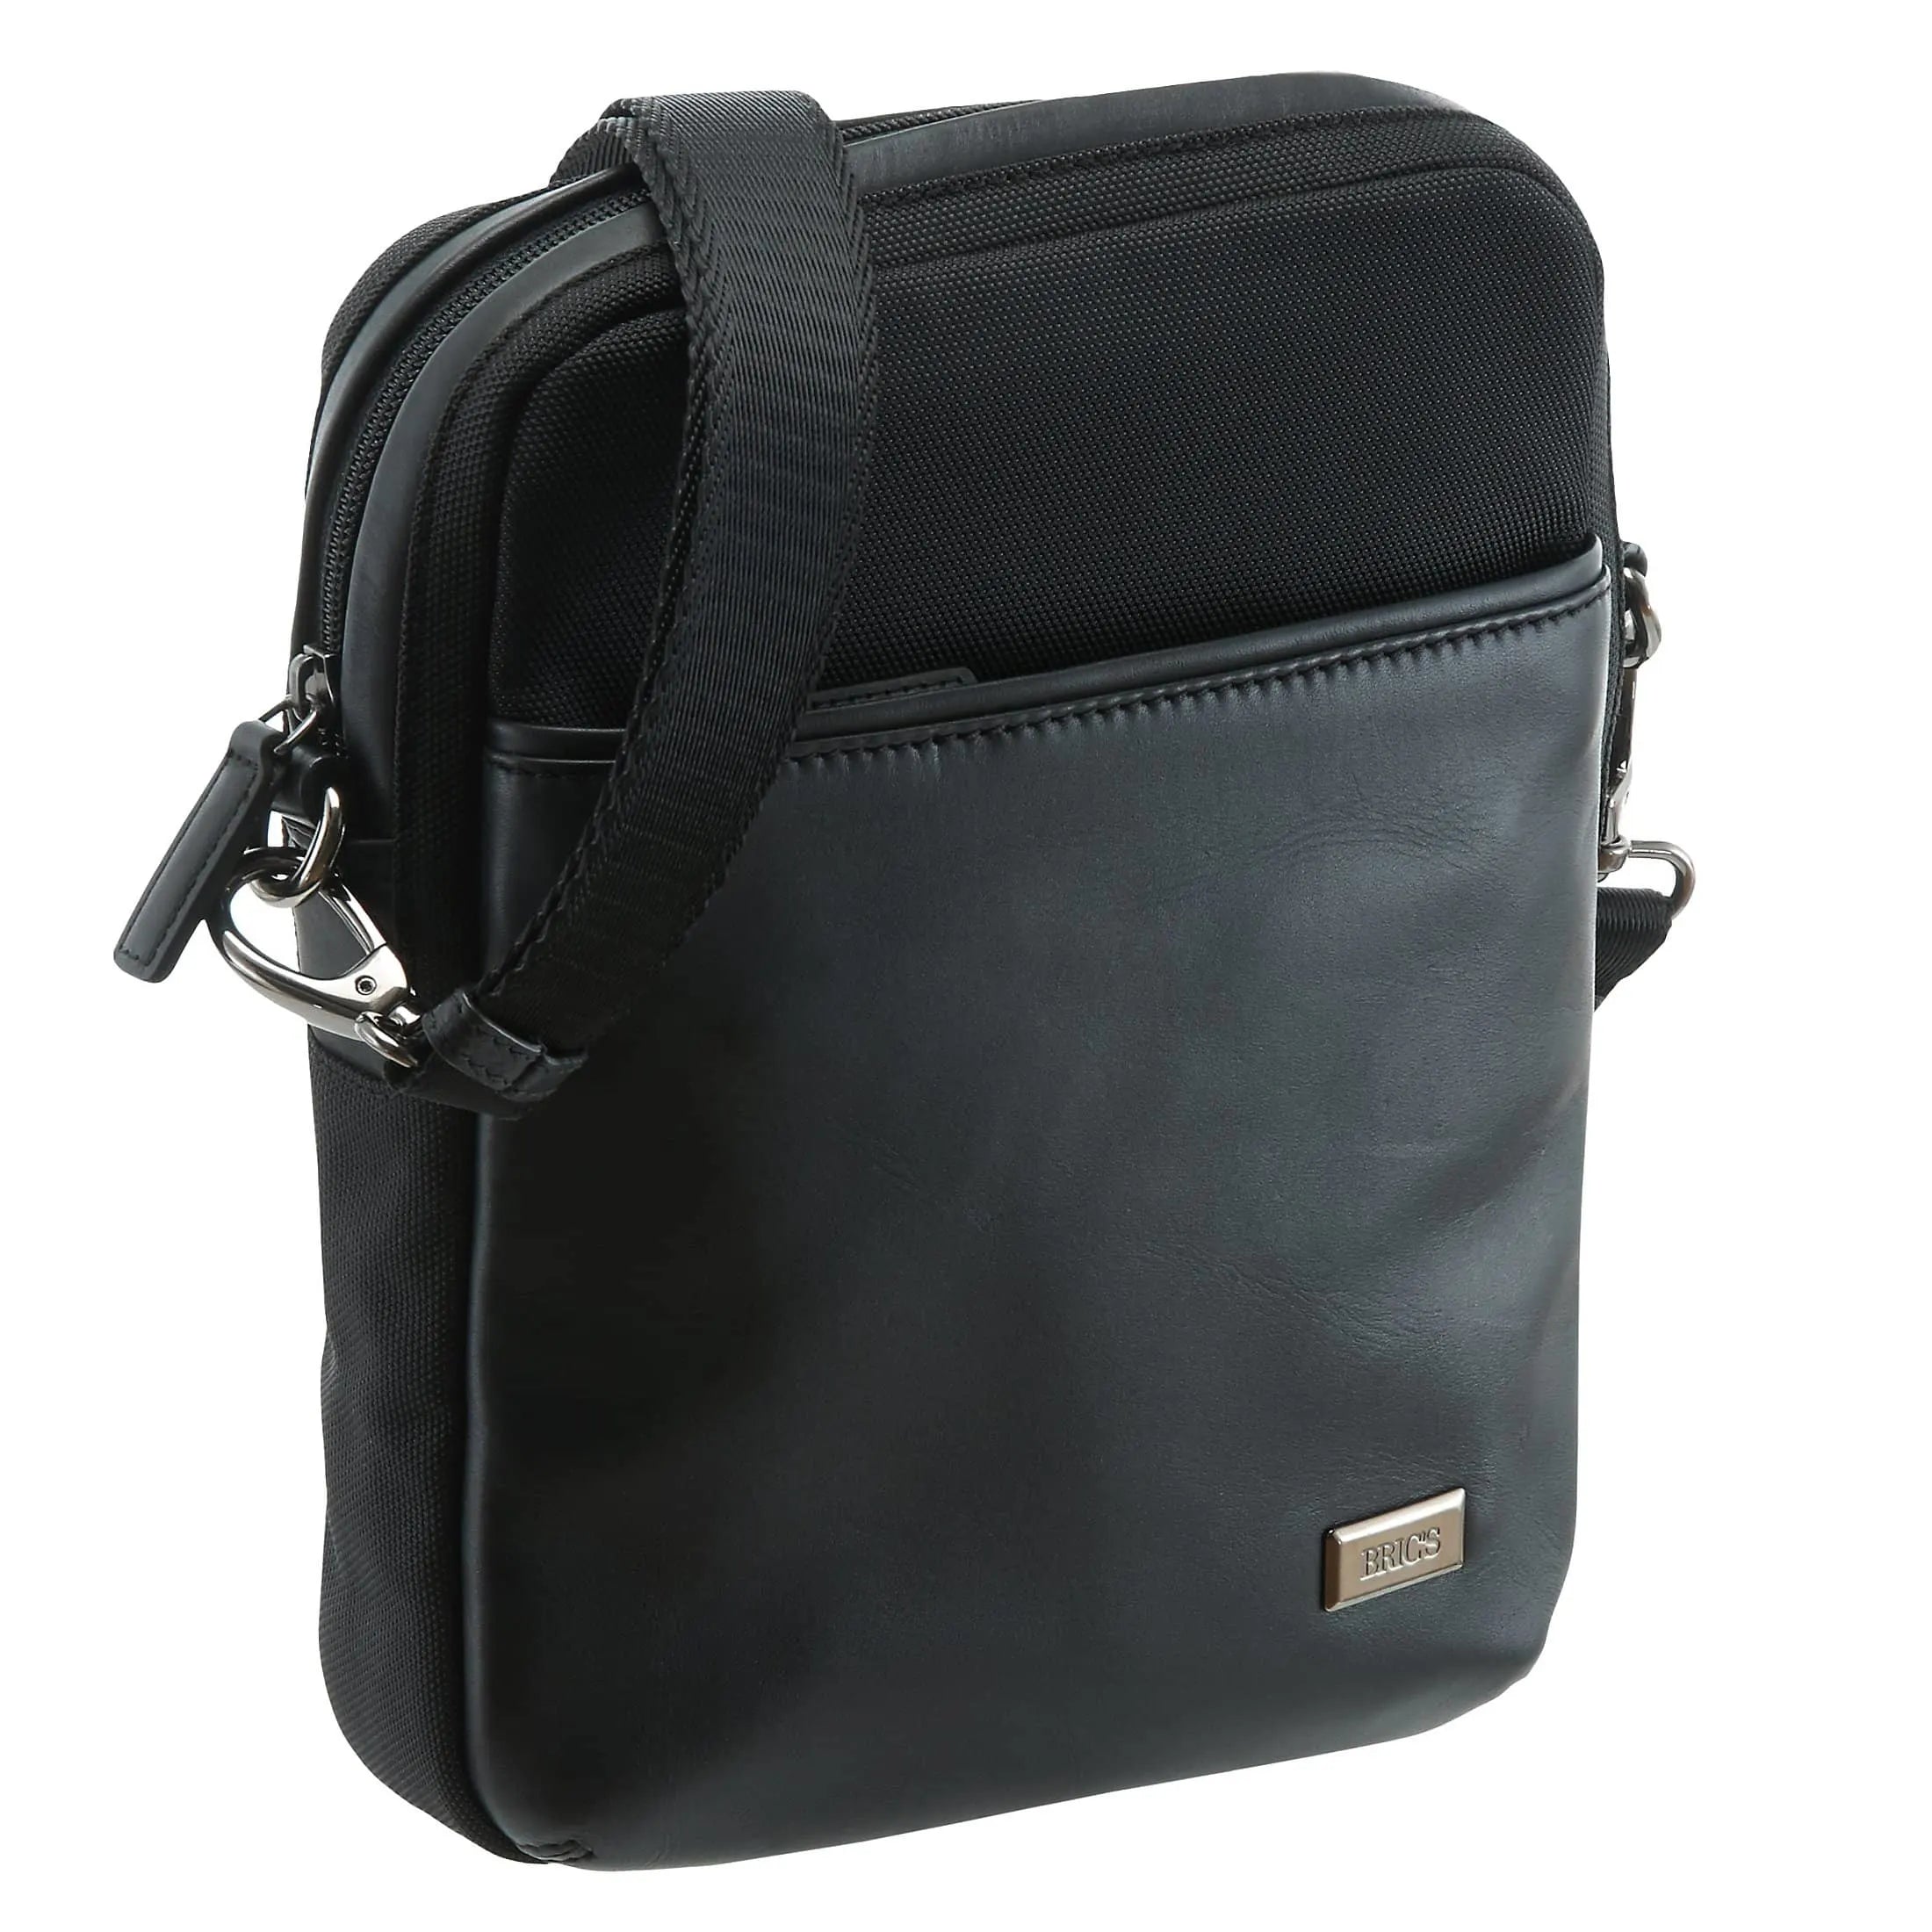 Brics Monza shoulder bag 28 cm - black